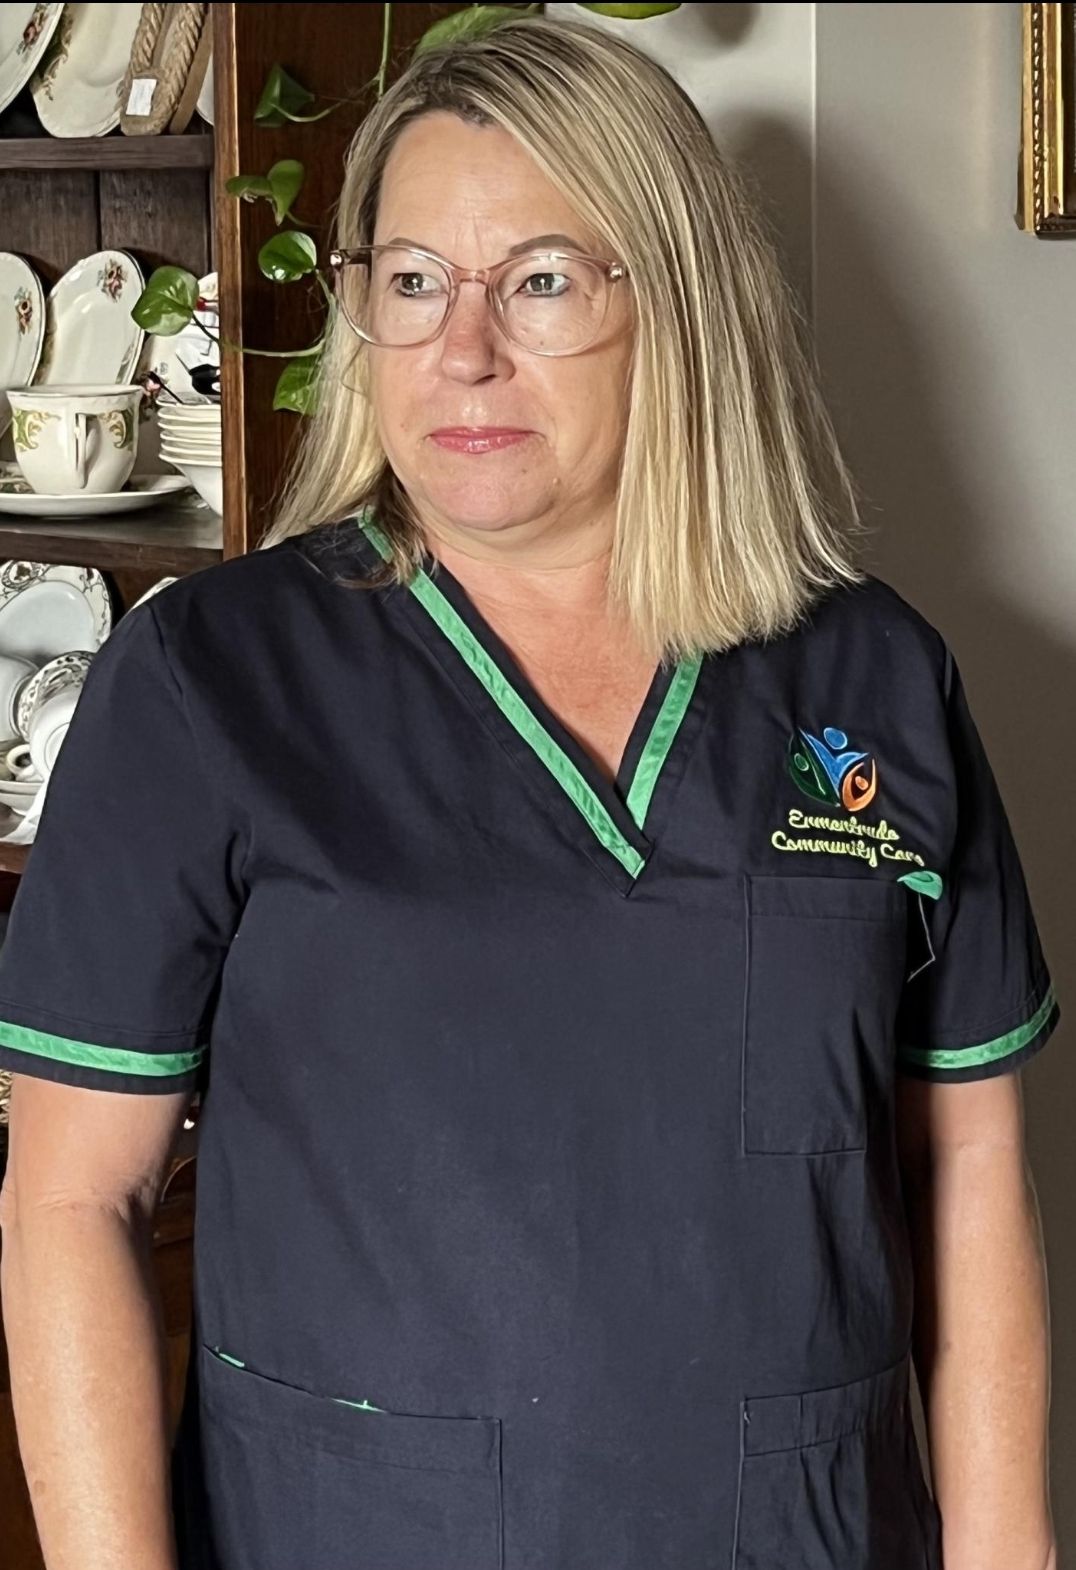 Ermentrude Community Care Head Nurse